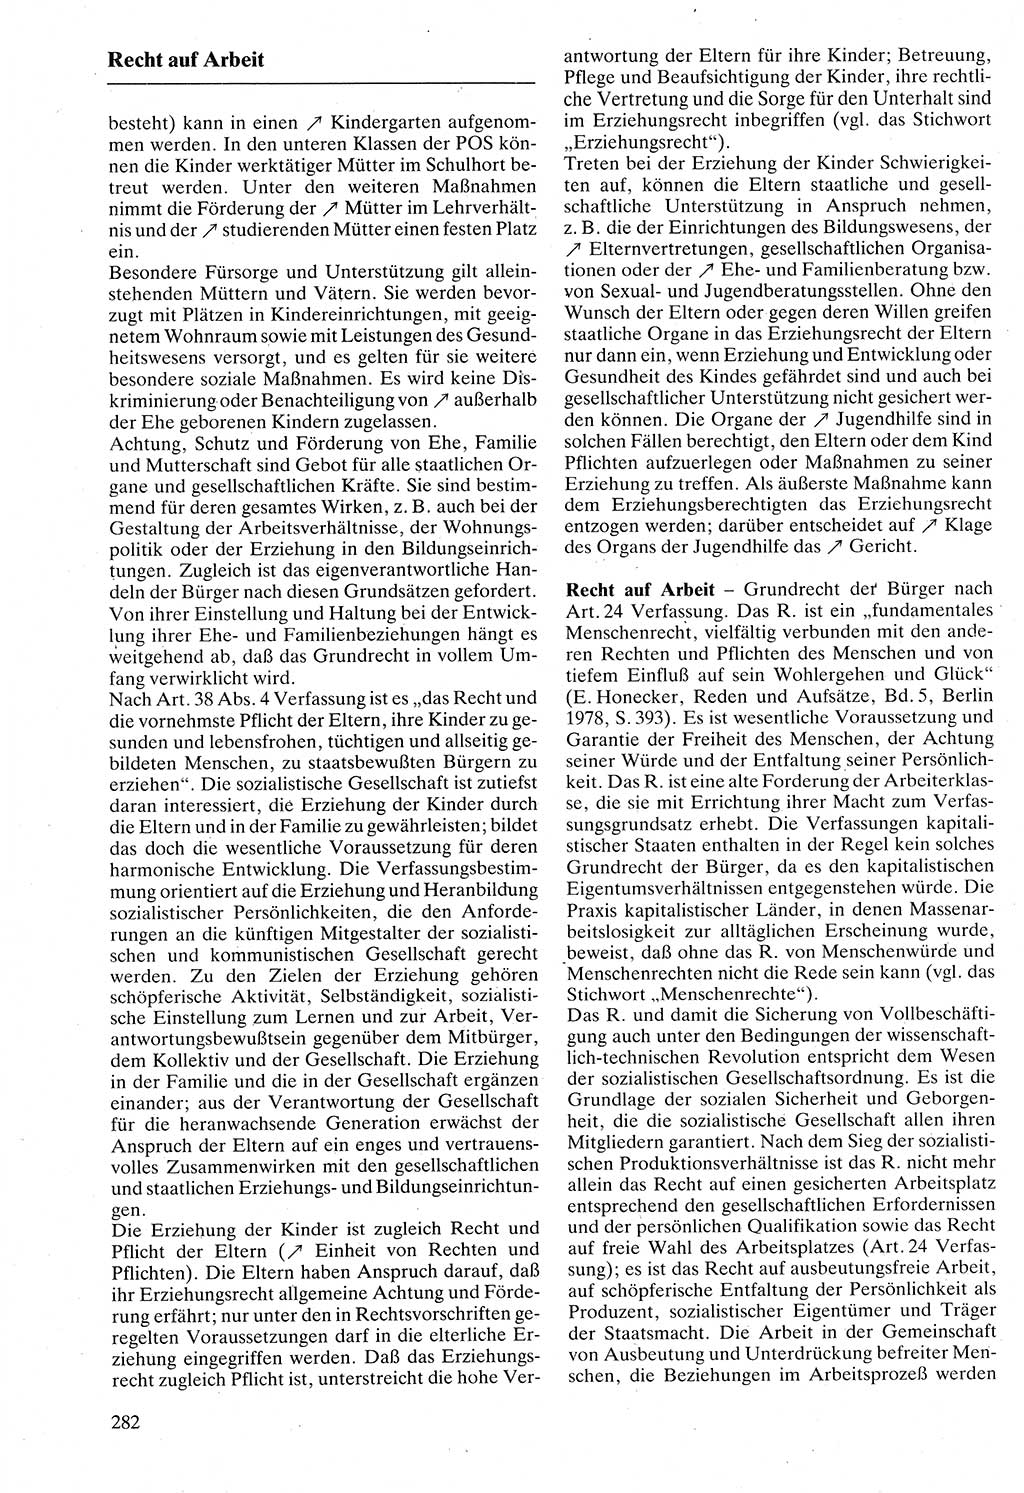 Rechtslexikon [Deutsche Demokratische Republik (DDR)] 1988, Seite 282 (Rechtslex. DDR 1988, S. 282)